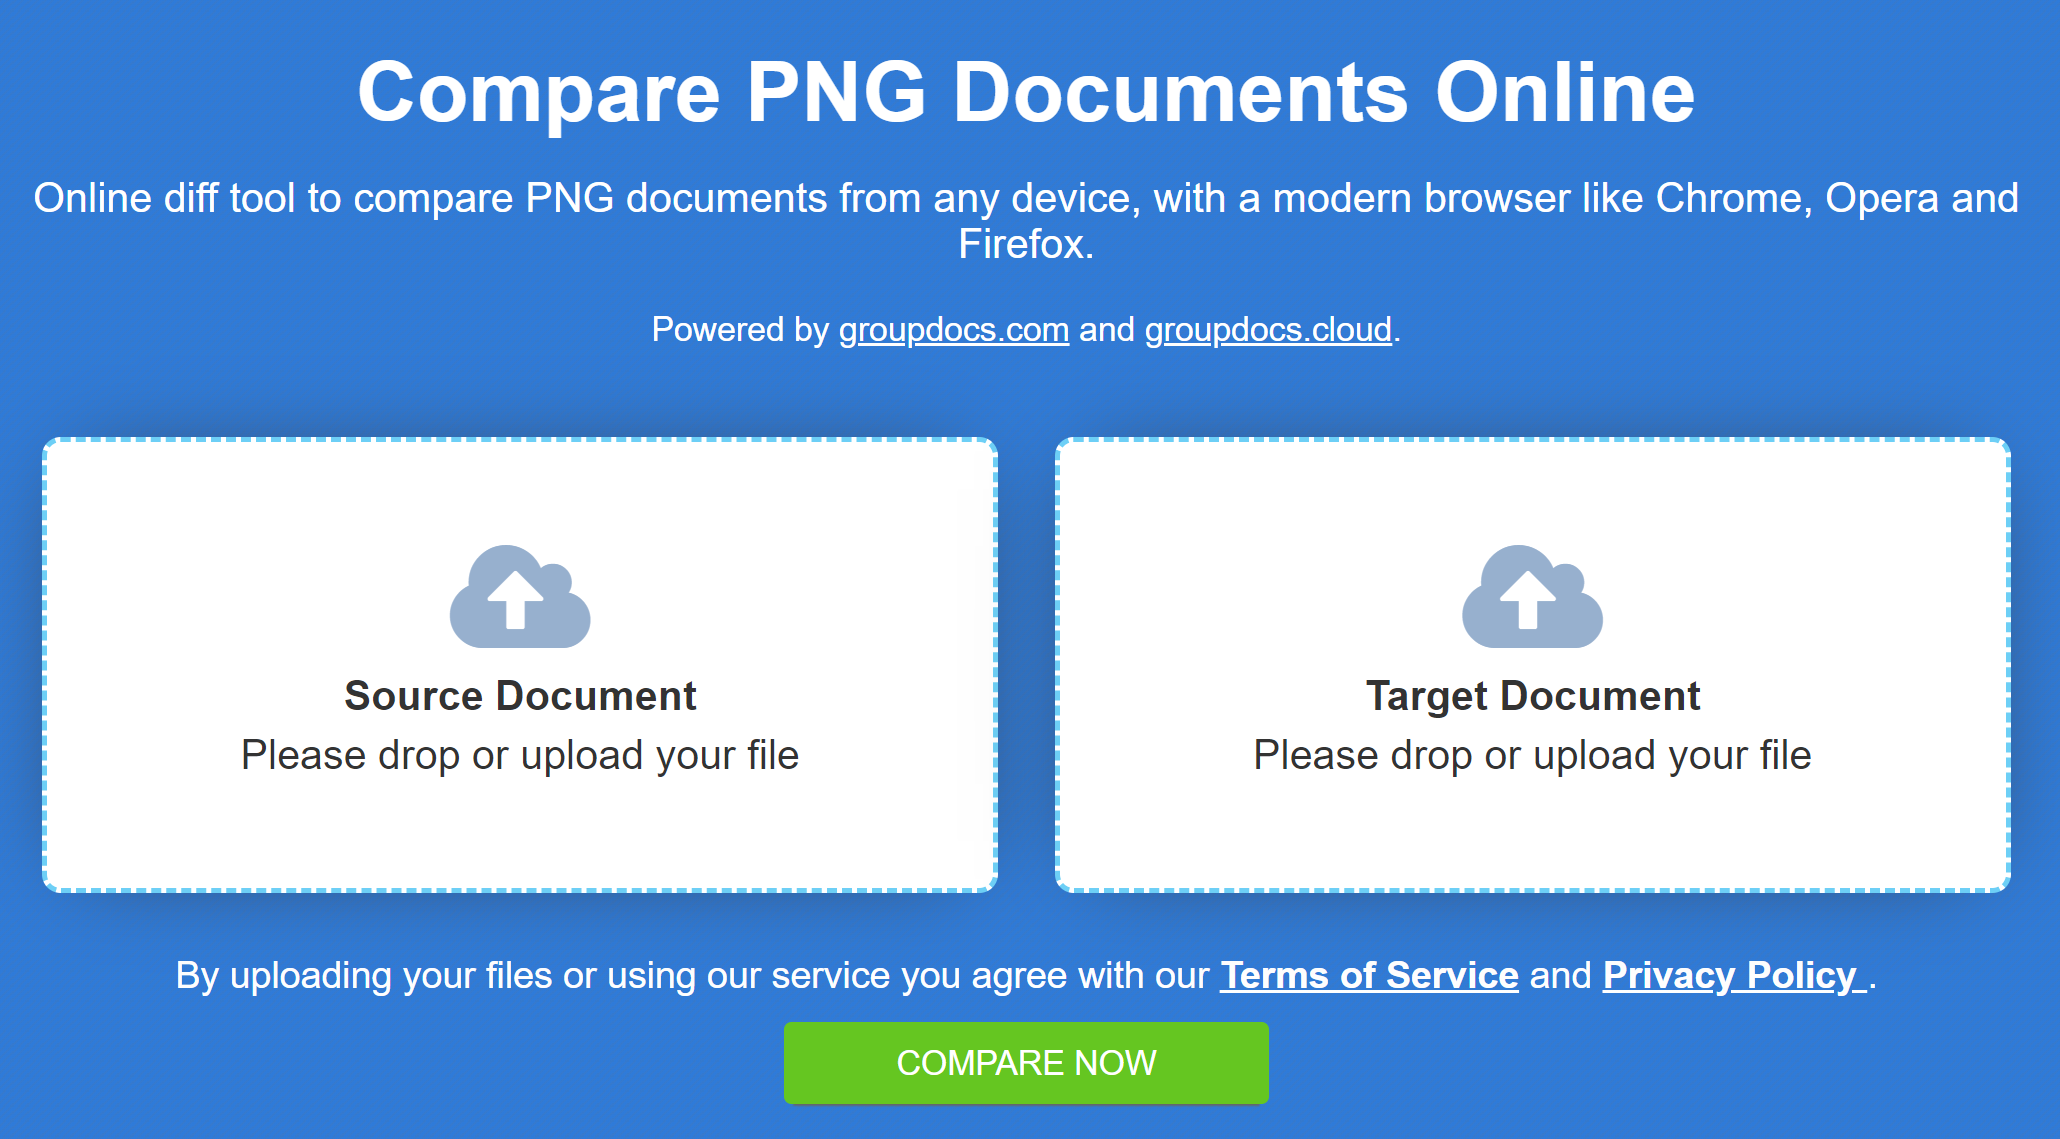 Herramienta de comparación en línea para comparar imágenes PNG